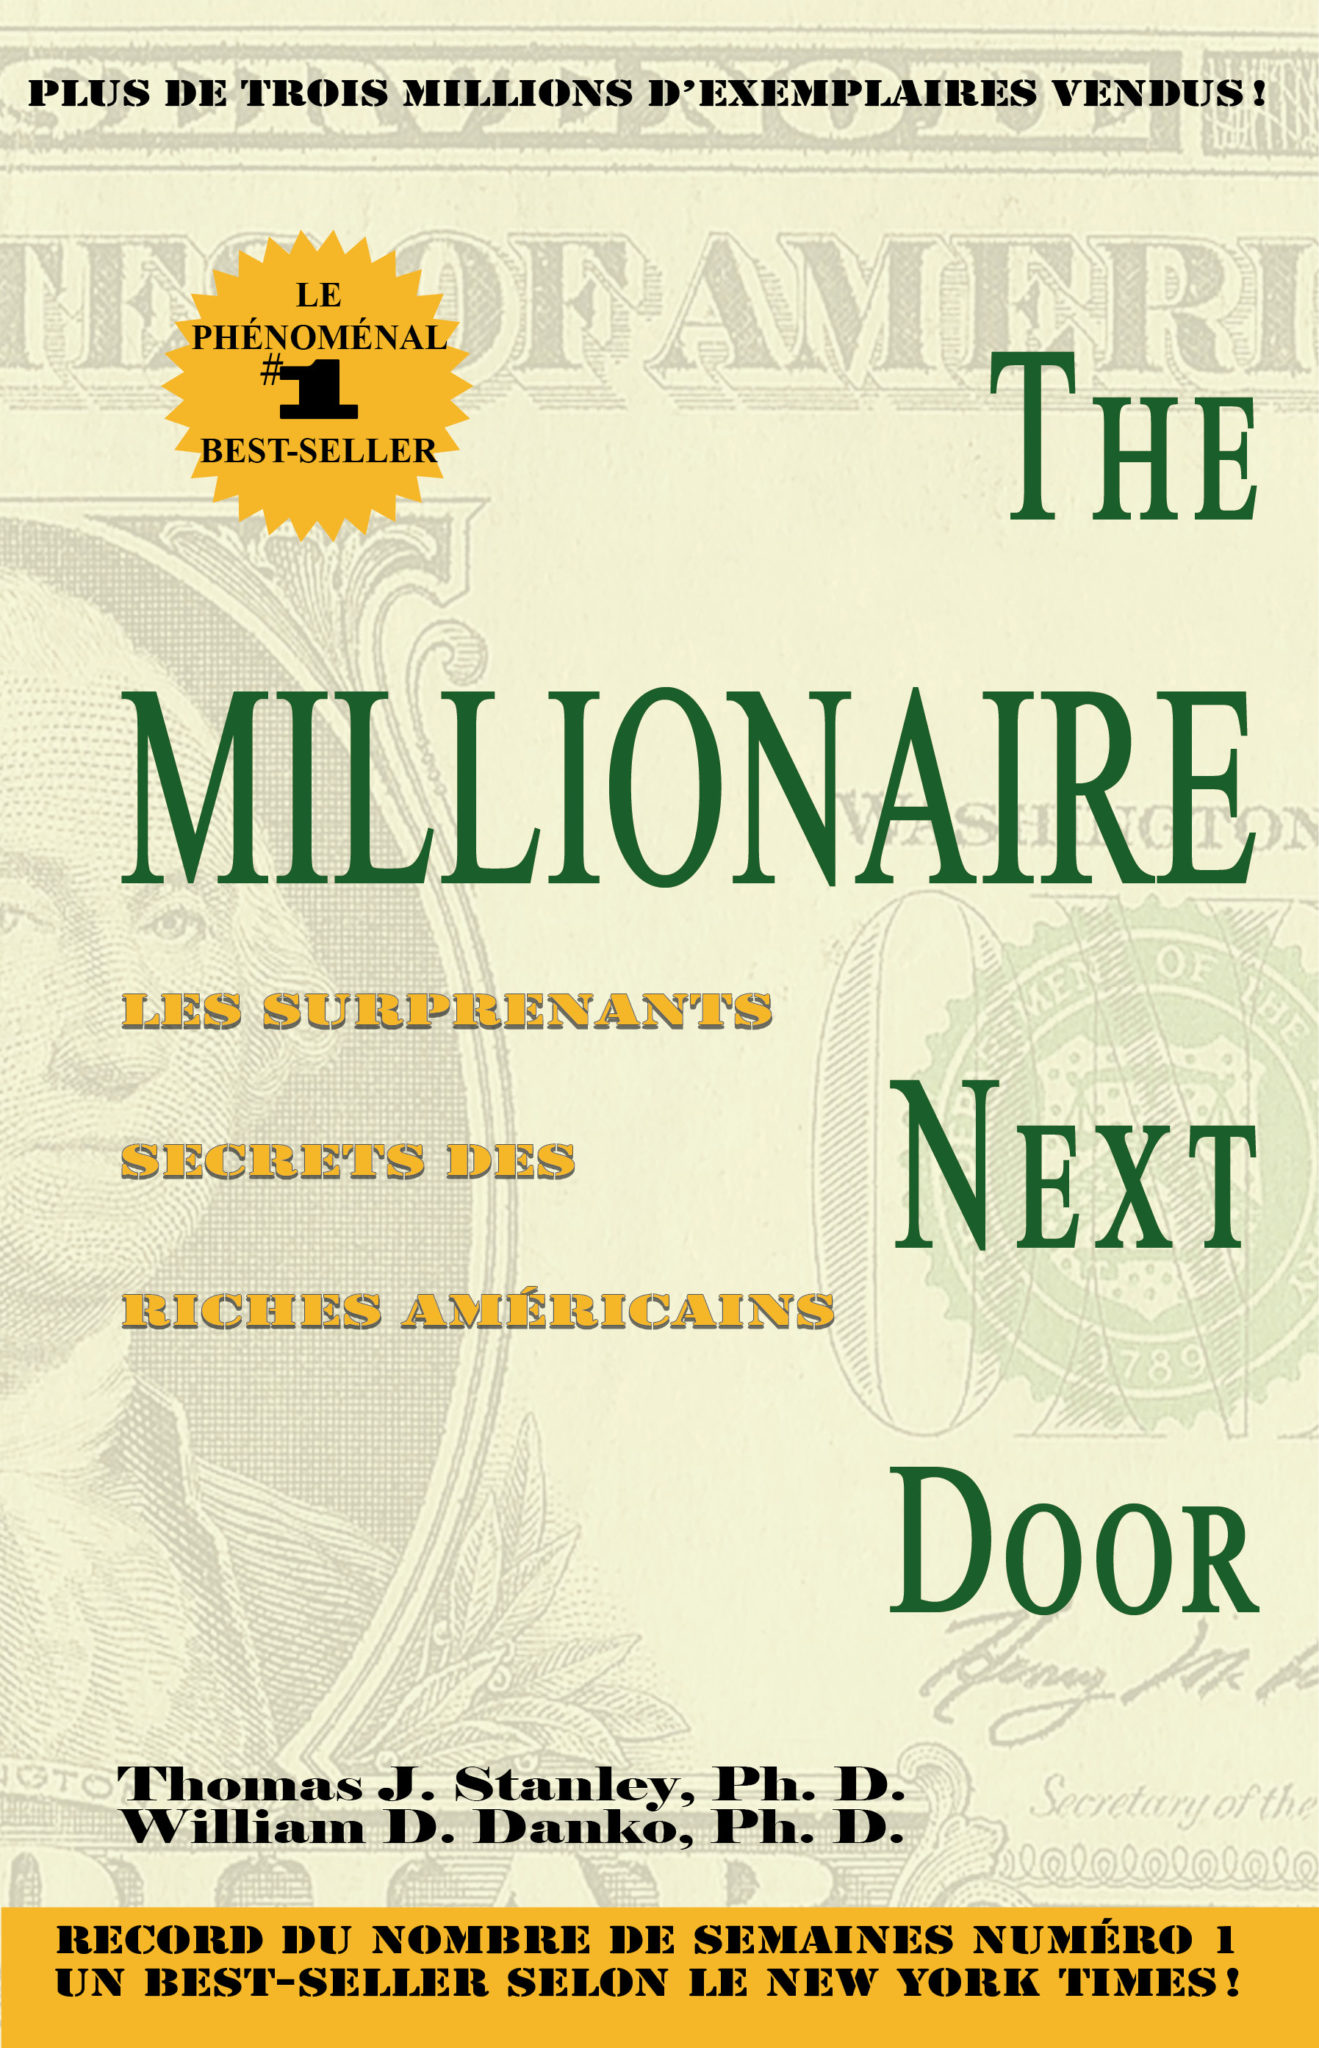 the millionaire next door full audiobook soundcloud